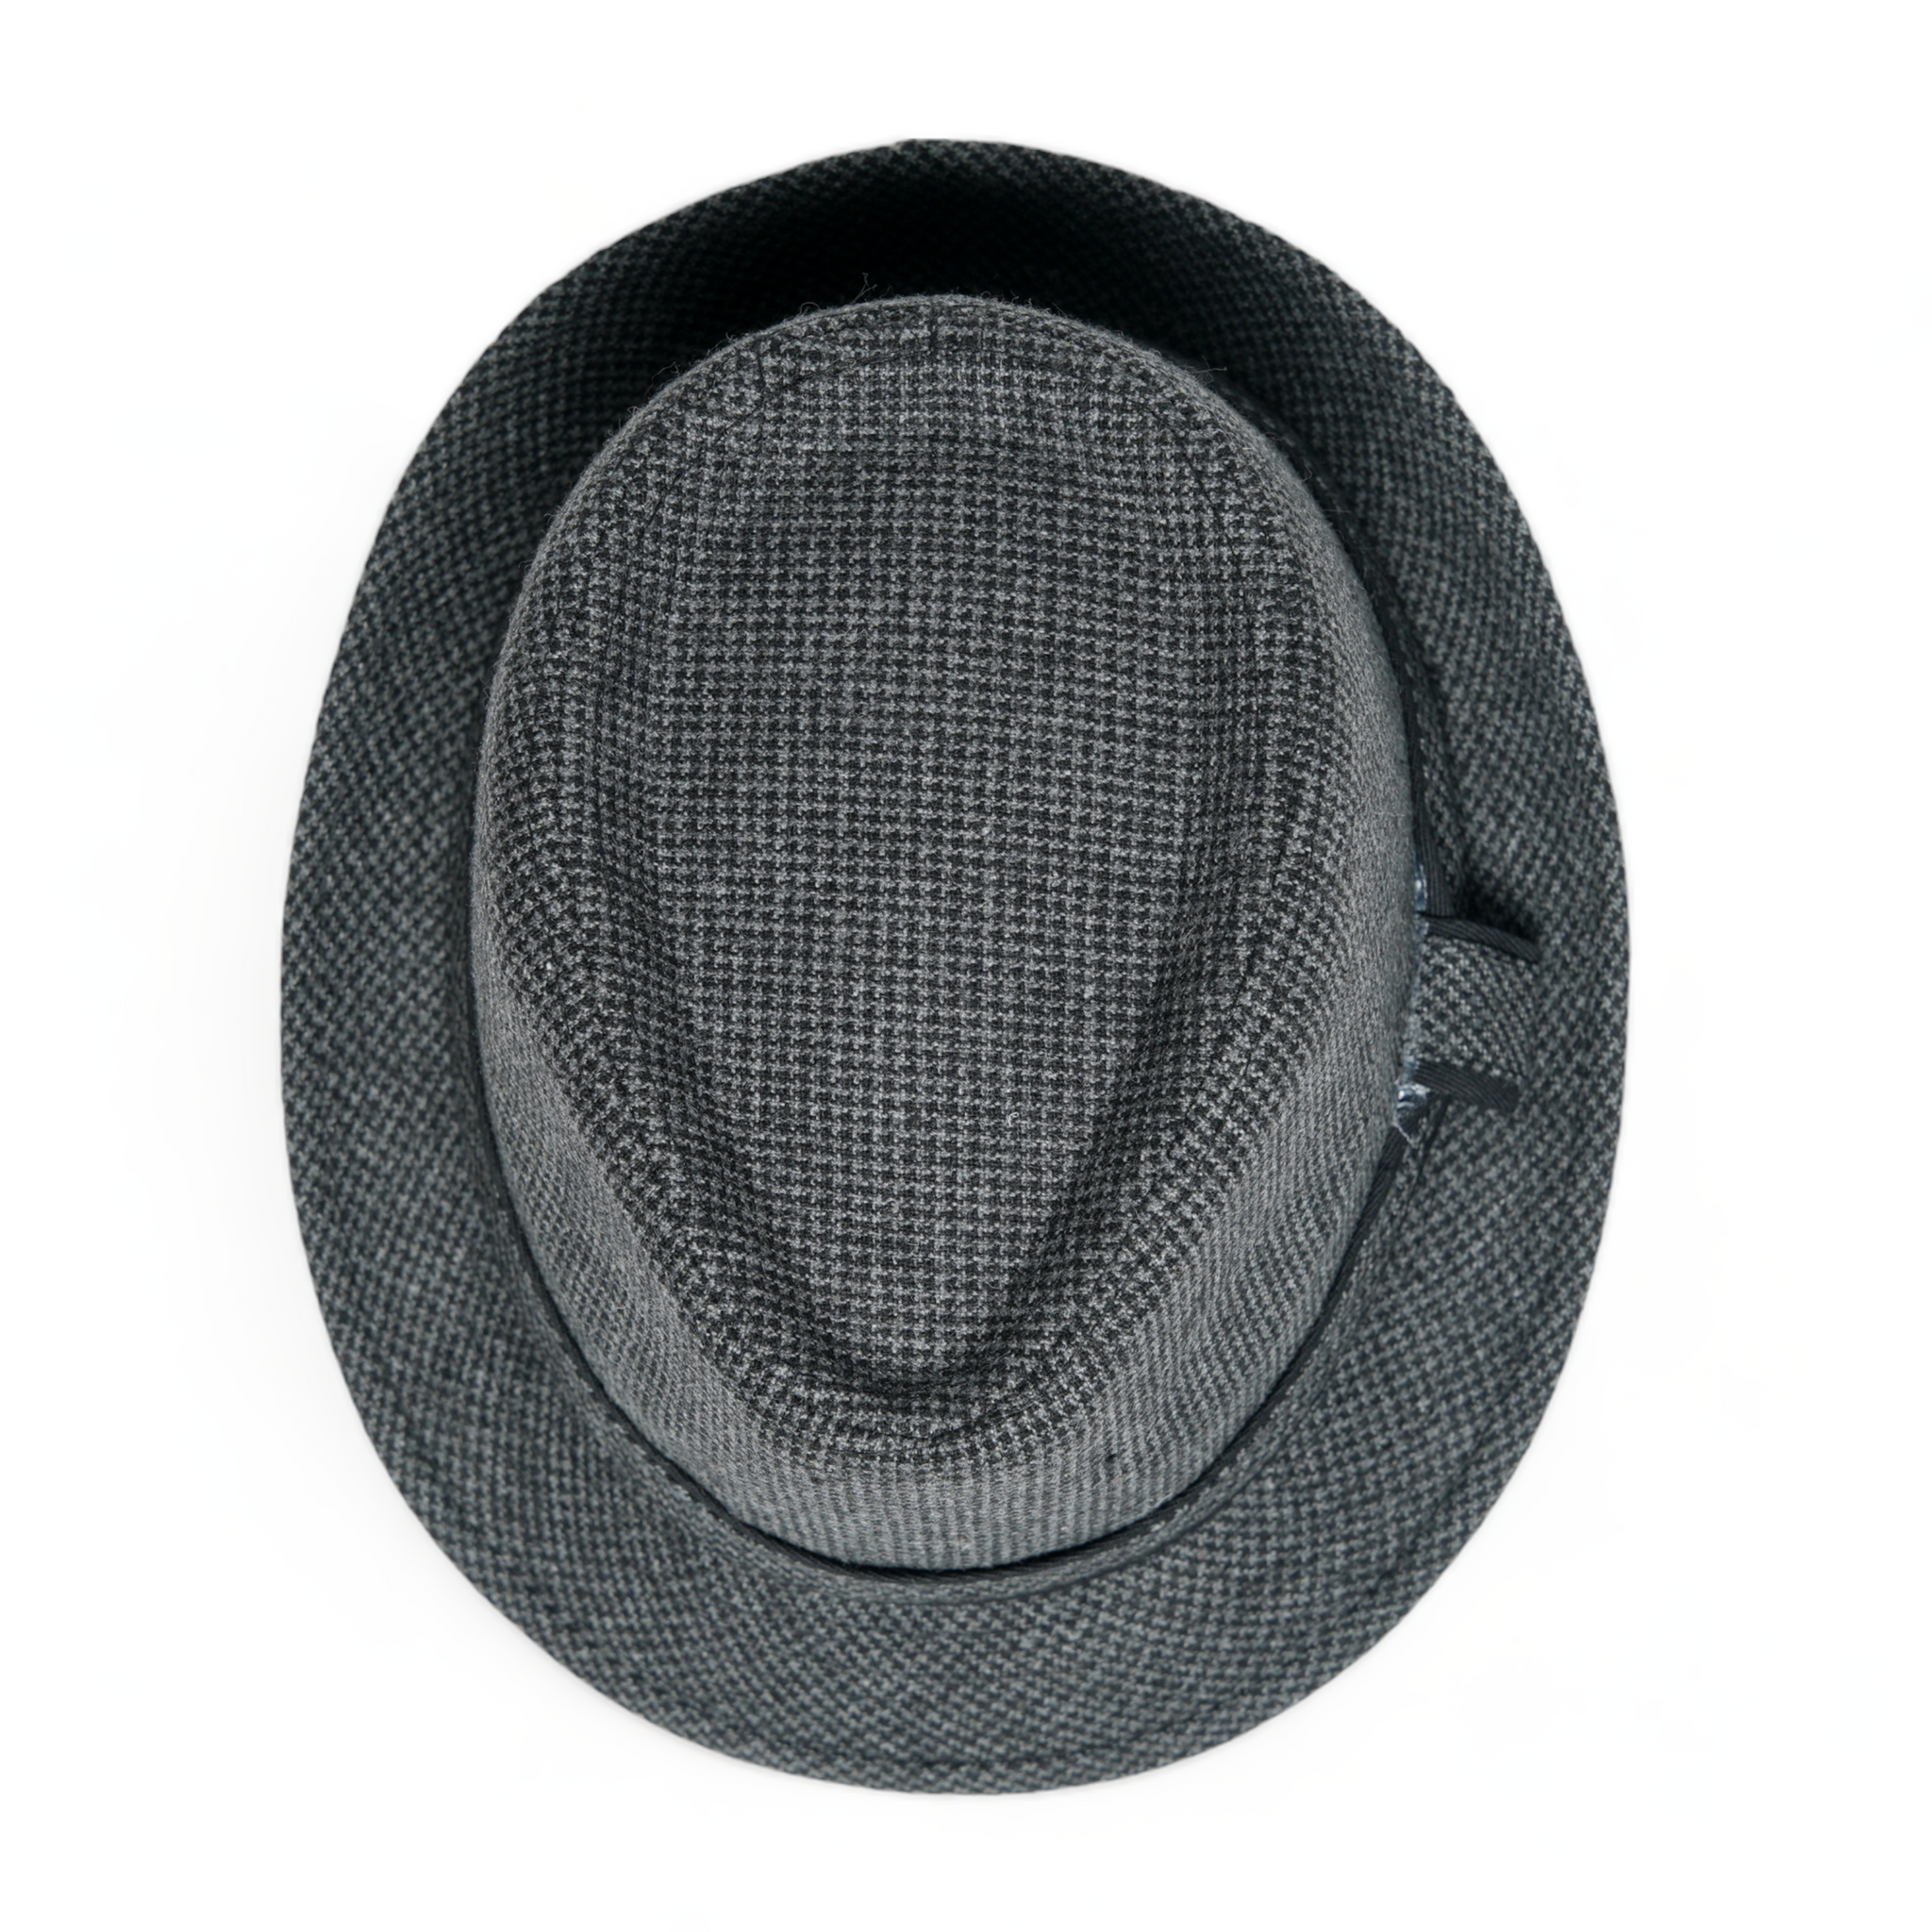 Chokore Classic Plaid Fedora Hat (Dark Gray)